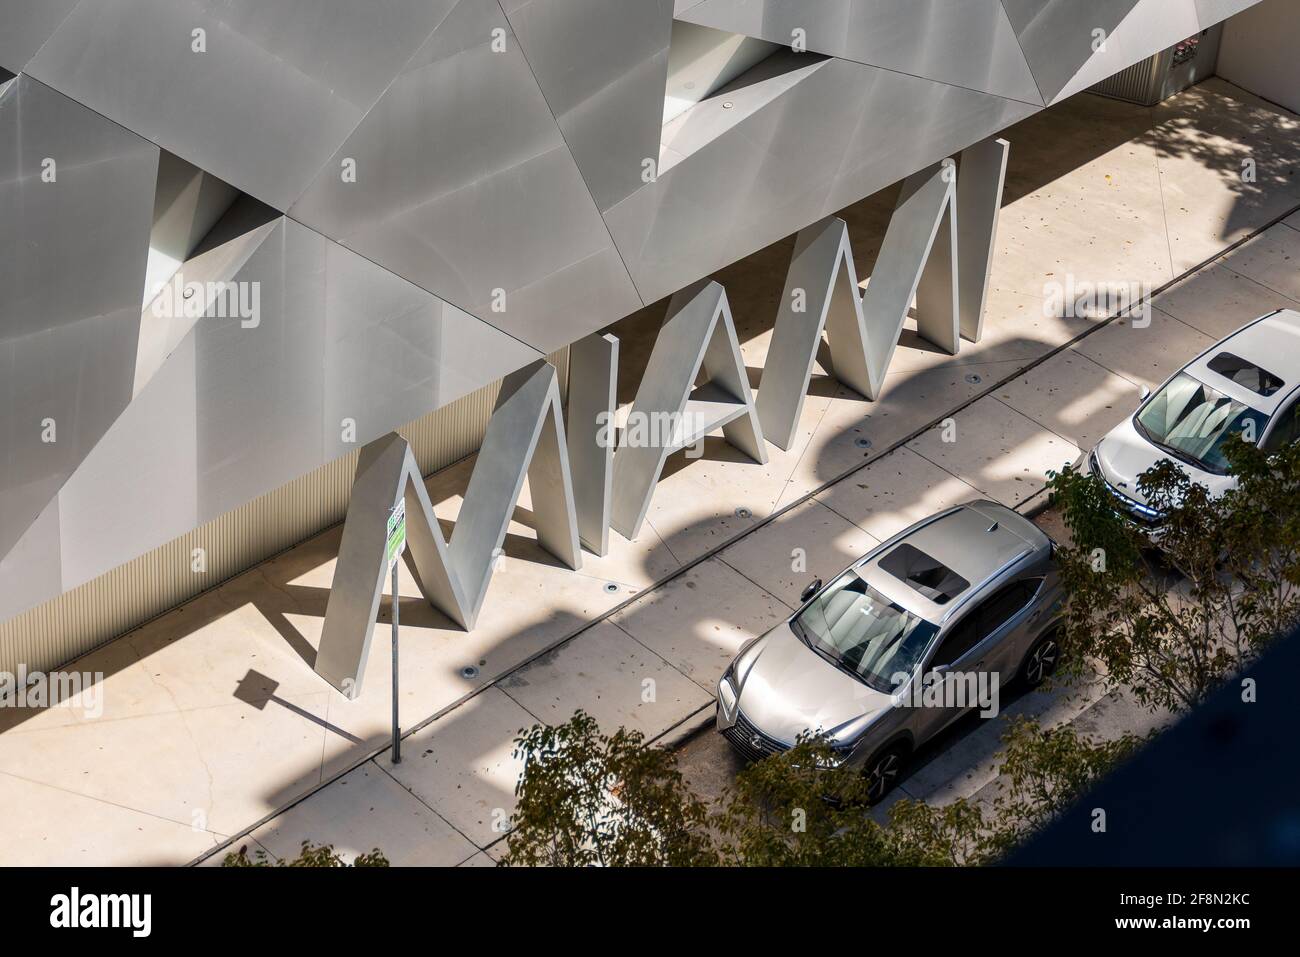 Miami signalisation dans de grandes lettres métalliques à l'Institut d'art contemporain, Floride, États-Unis Banque D'Images